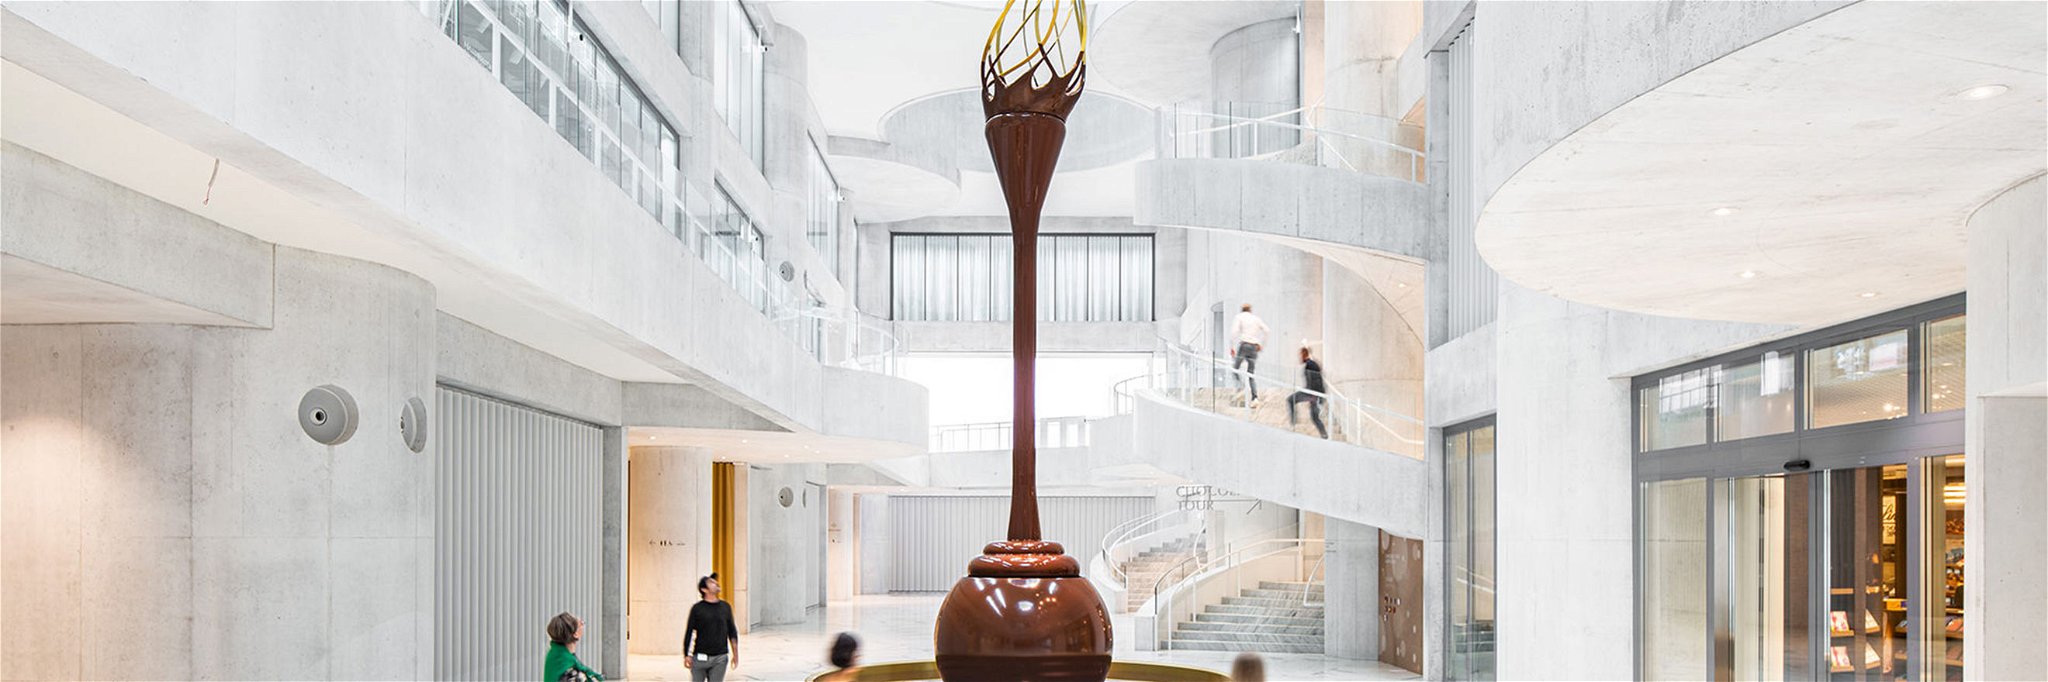 Der weltweit höchste freistehende Schokoladenbrunnen im Foyer des Lindt Home of Chocolate.